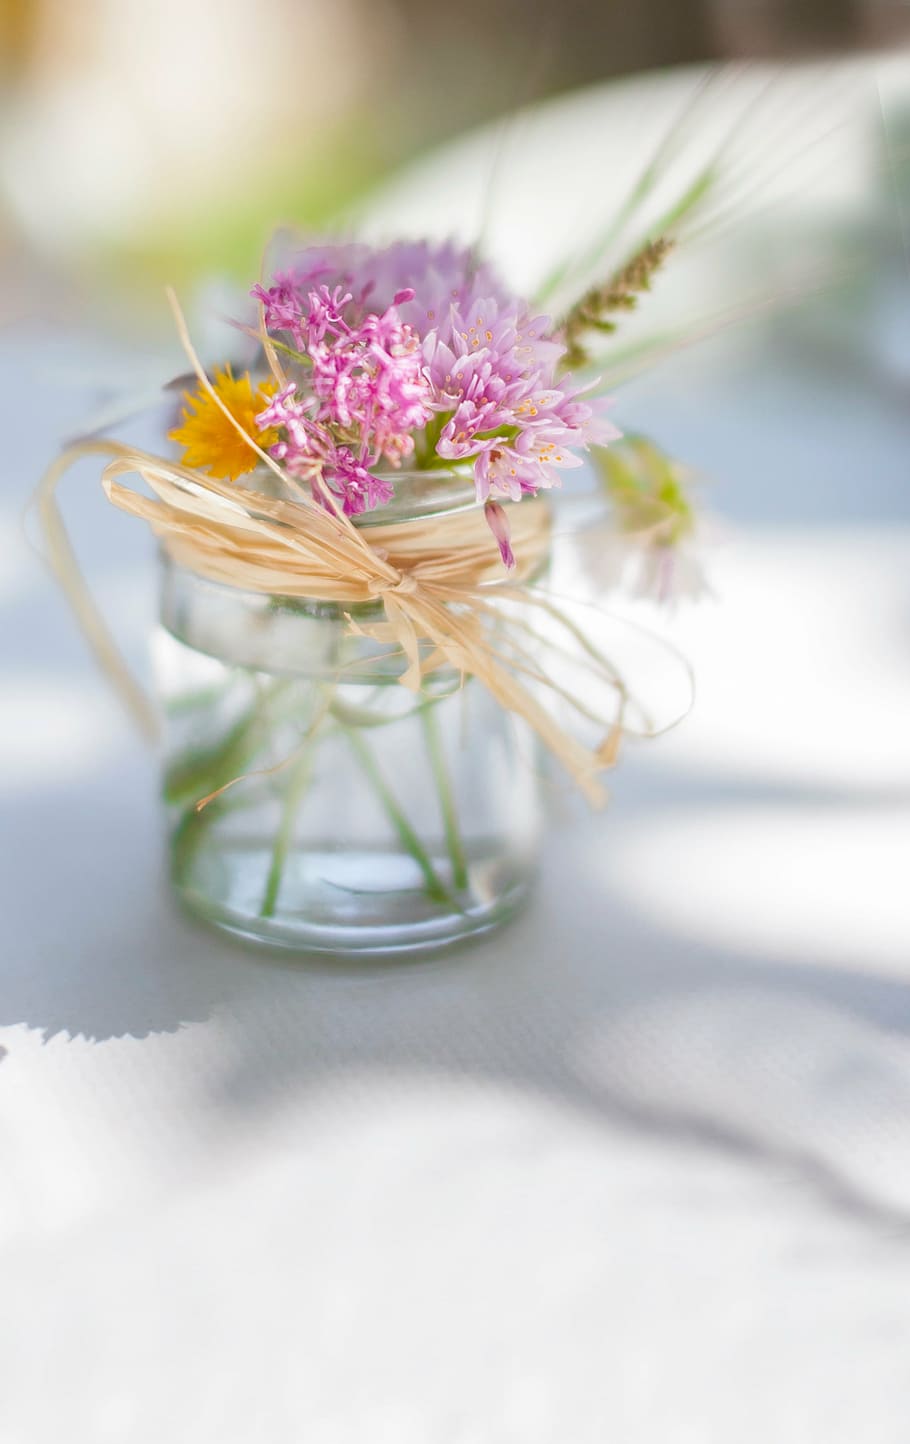 selectivo, fotografía de enfoque, rosa, flor de pétalos, claro, frasco de vidrio, blanco, superficie, flores, vidrio